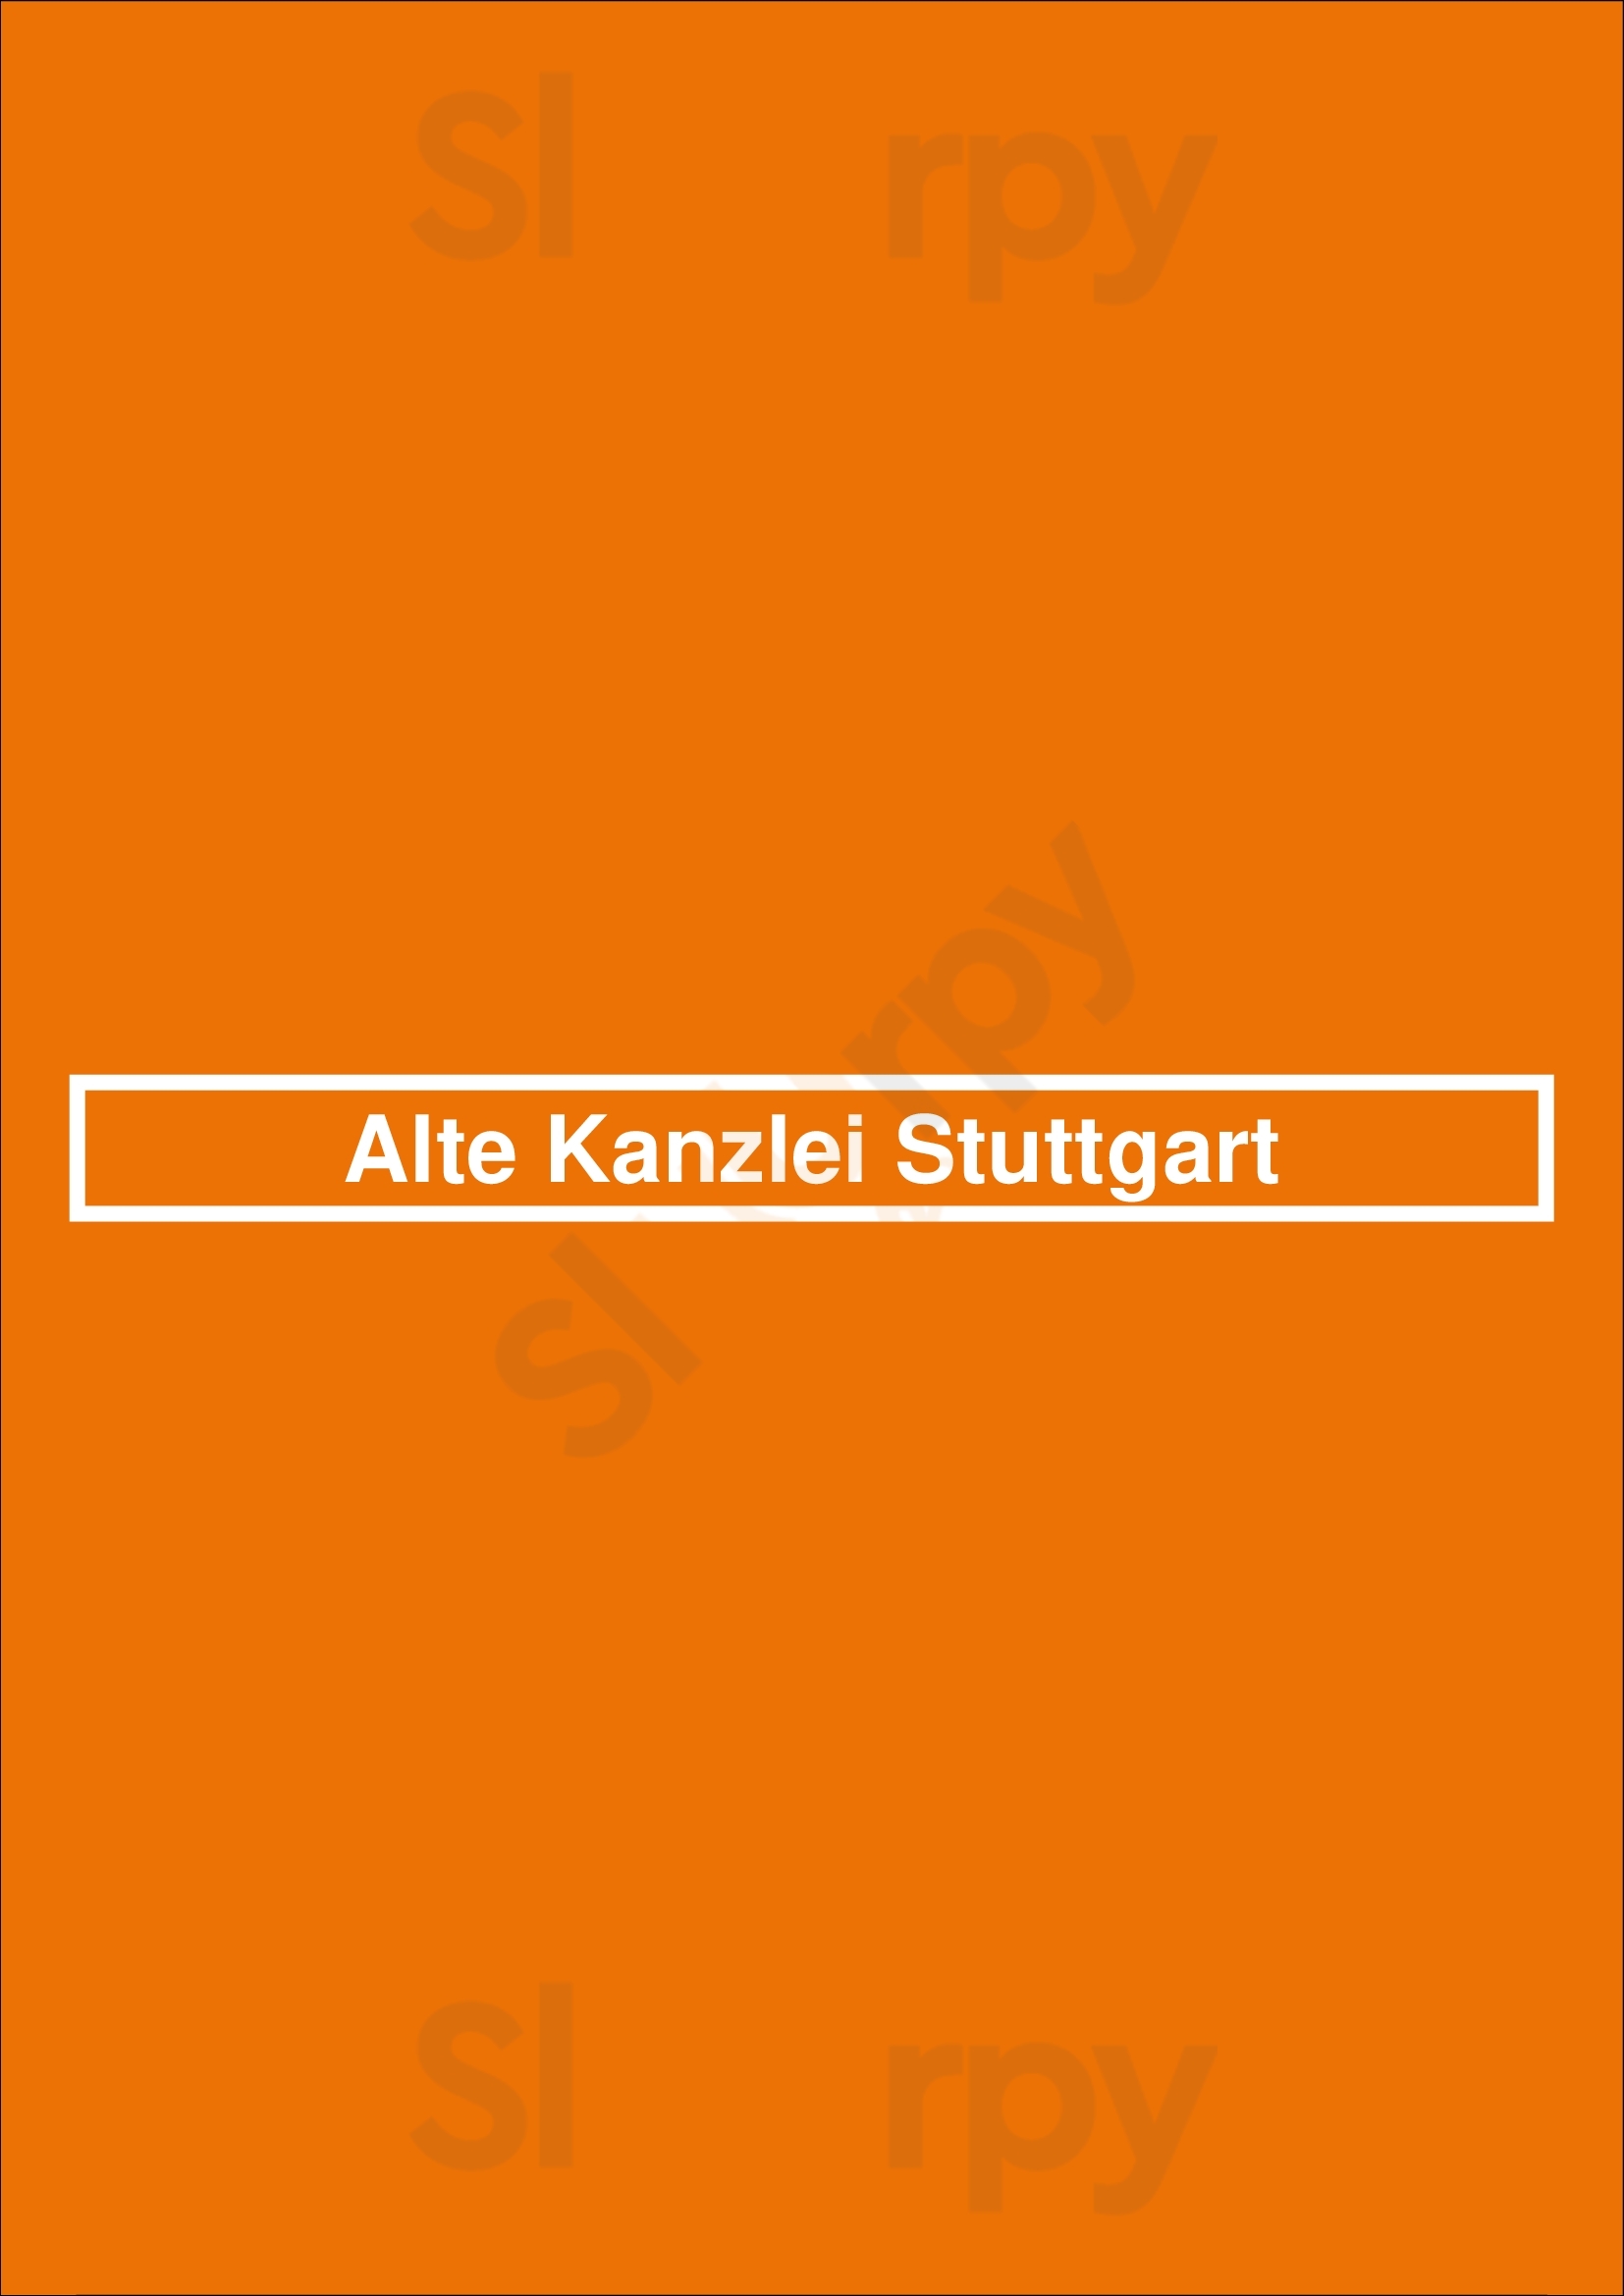 Alte Kanzlei Stuttgart Stuttgart Menu - 1